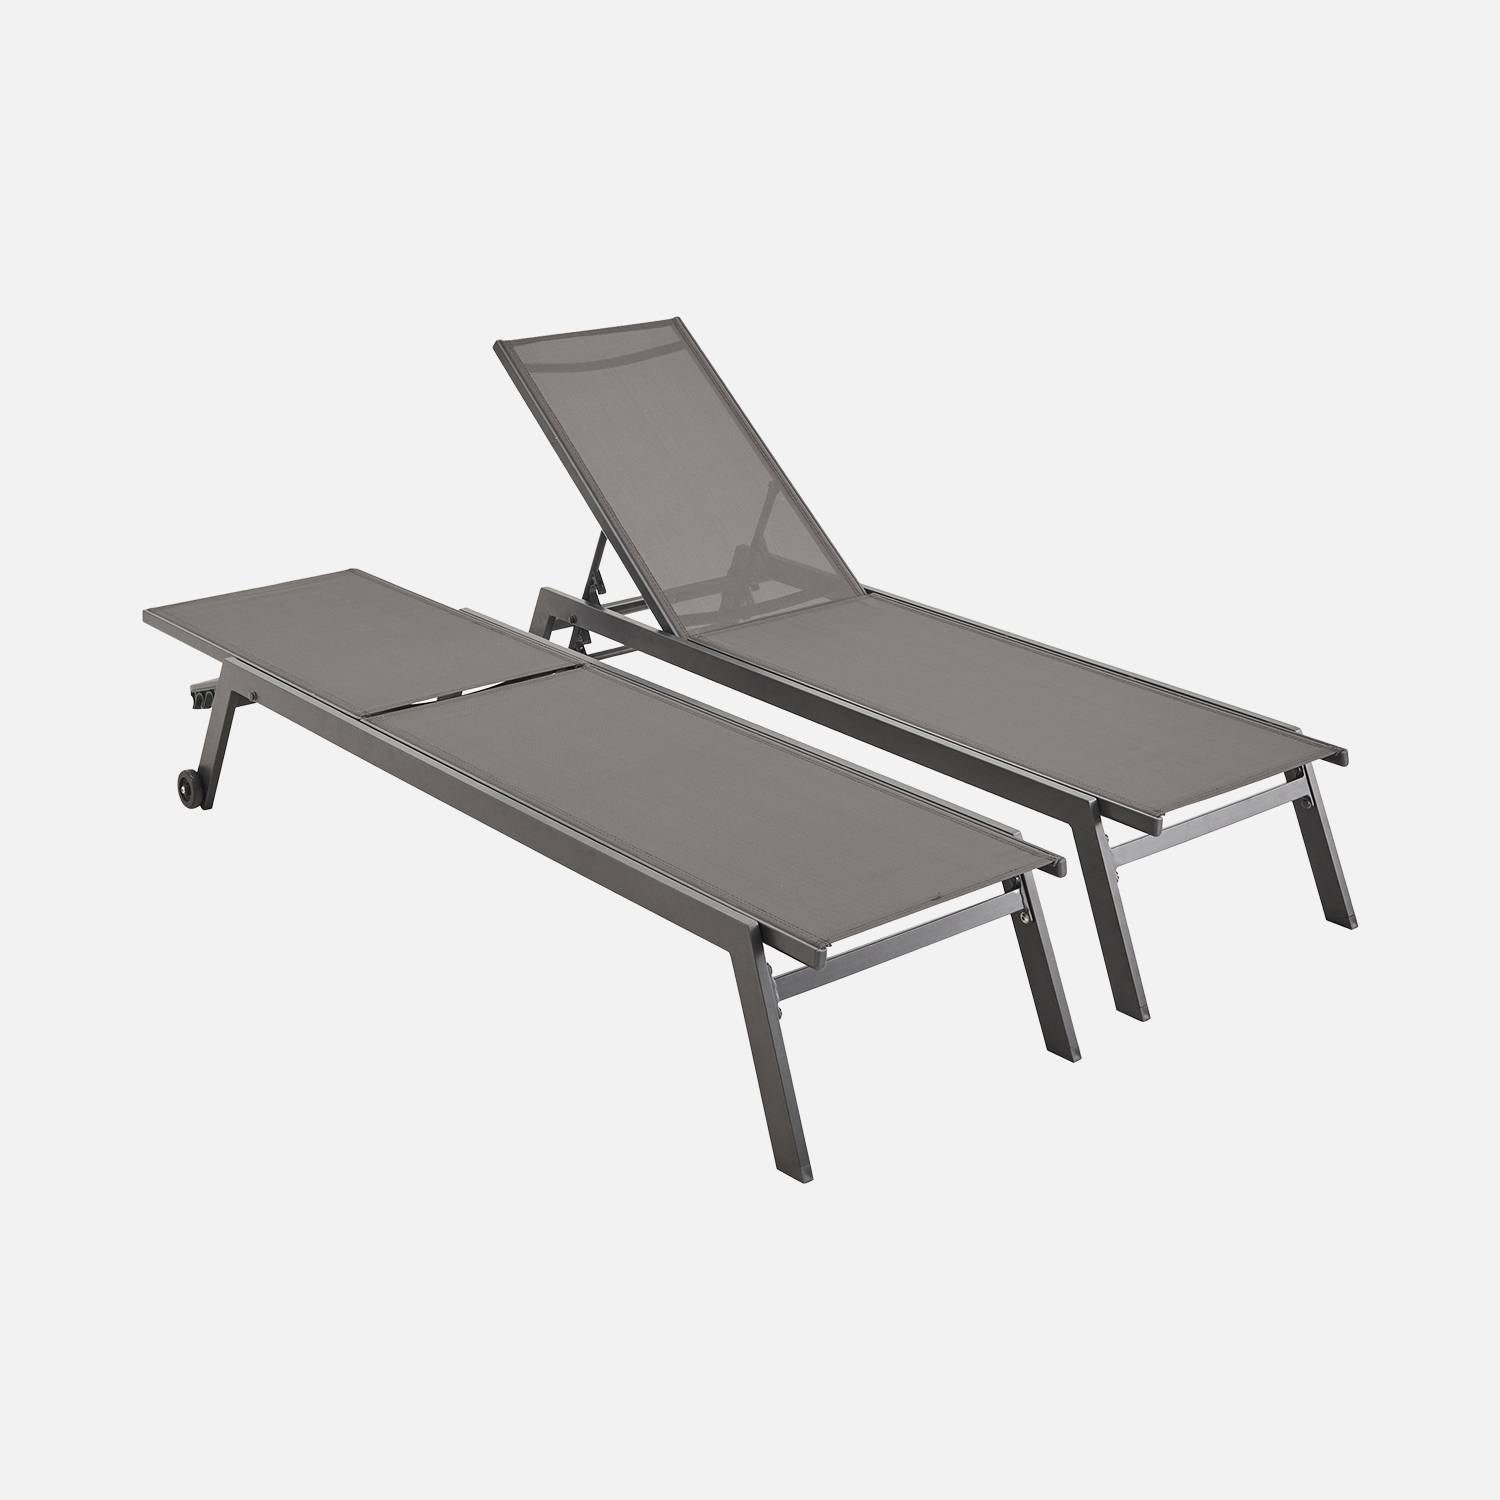 ELSA - Set van 2 ligstoelen van aluminium en textileen, ligbed multipositioneel met wieltjes, kleur antraciet/donkergrijs | sweeek